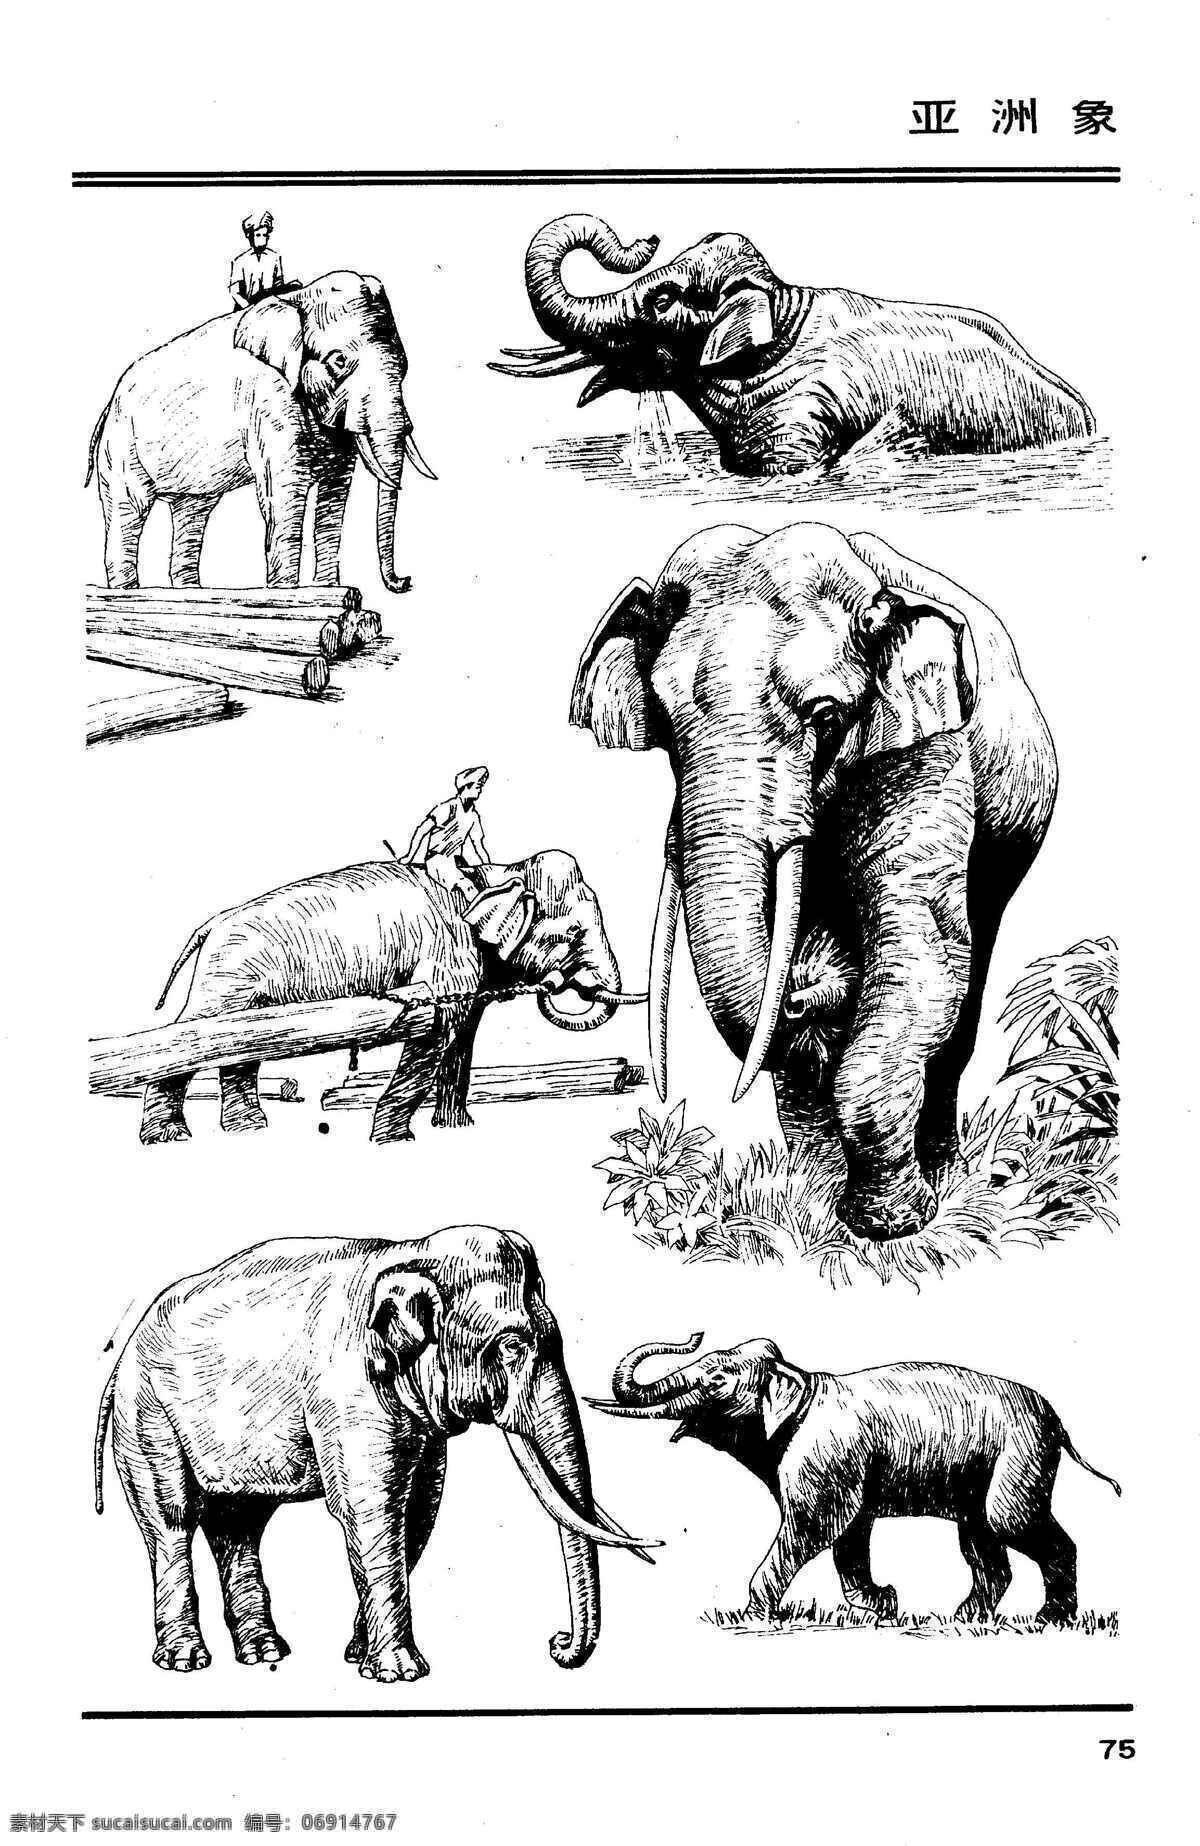 画兽谱79 亚洲象 百兽 兽 家禽 猛兽 动物 白描 线描 绘画 美术 禽兽 野生动物 百兽图 画兽谱 象 大象 野象 生物世界 设计图库